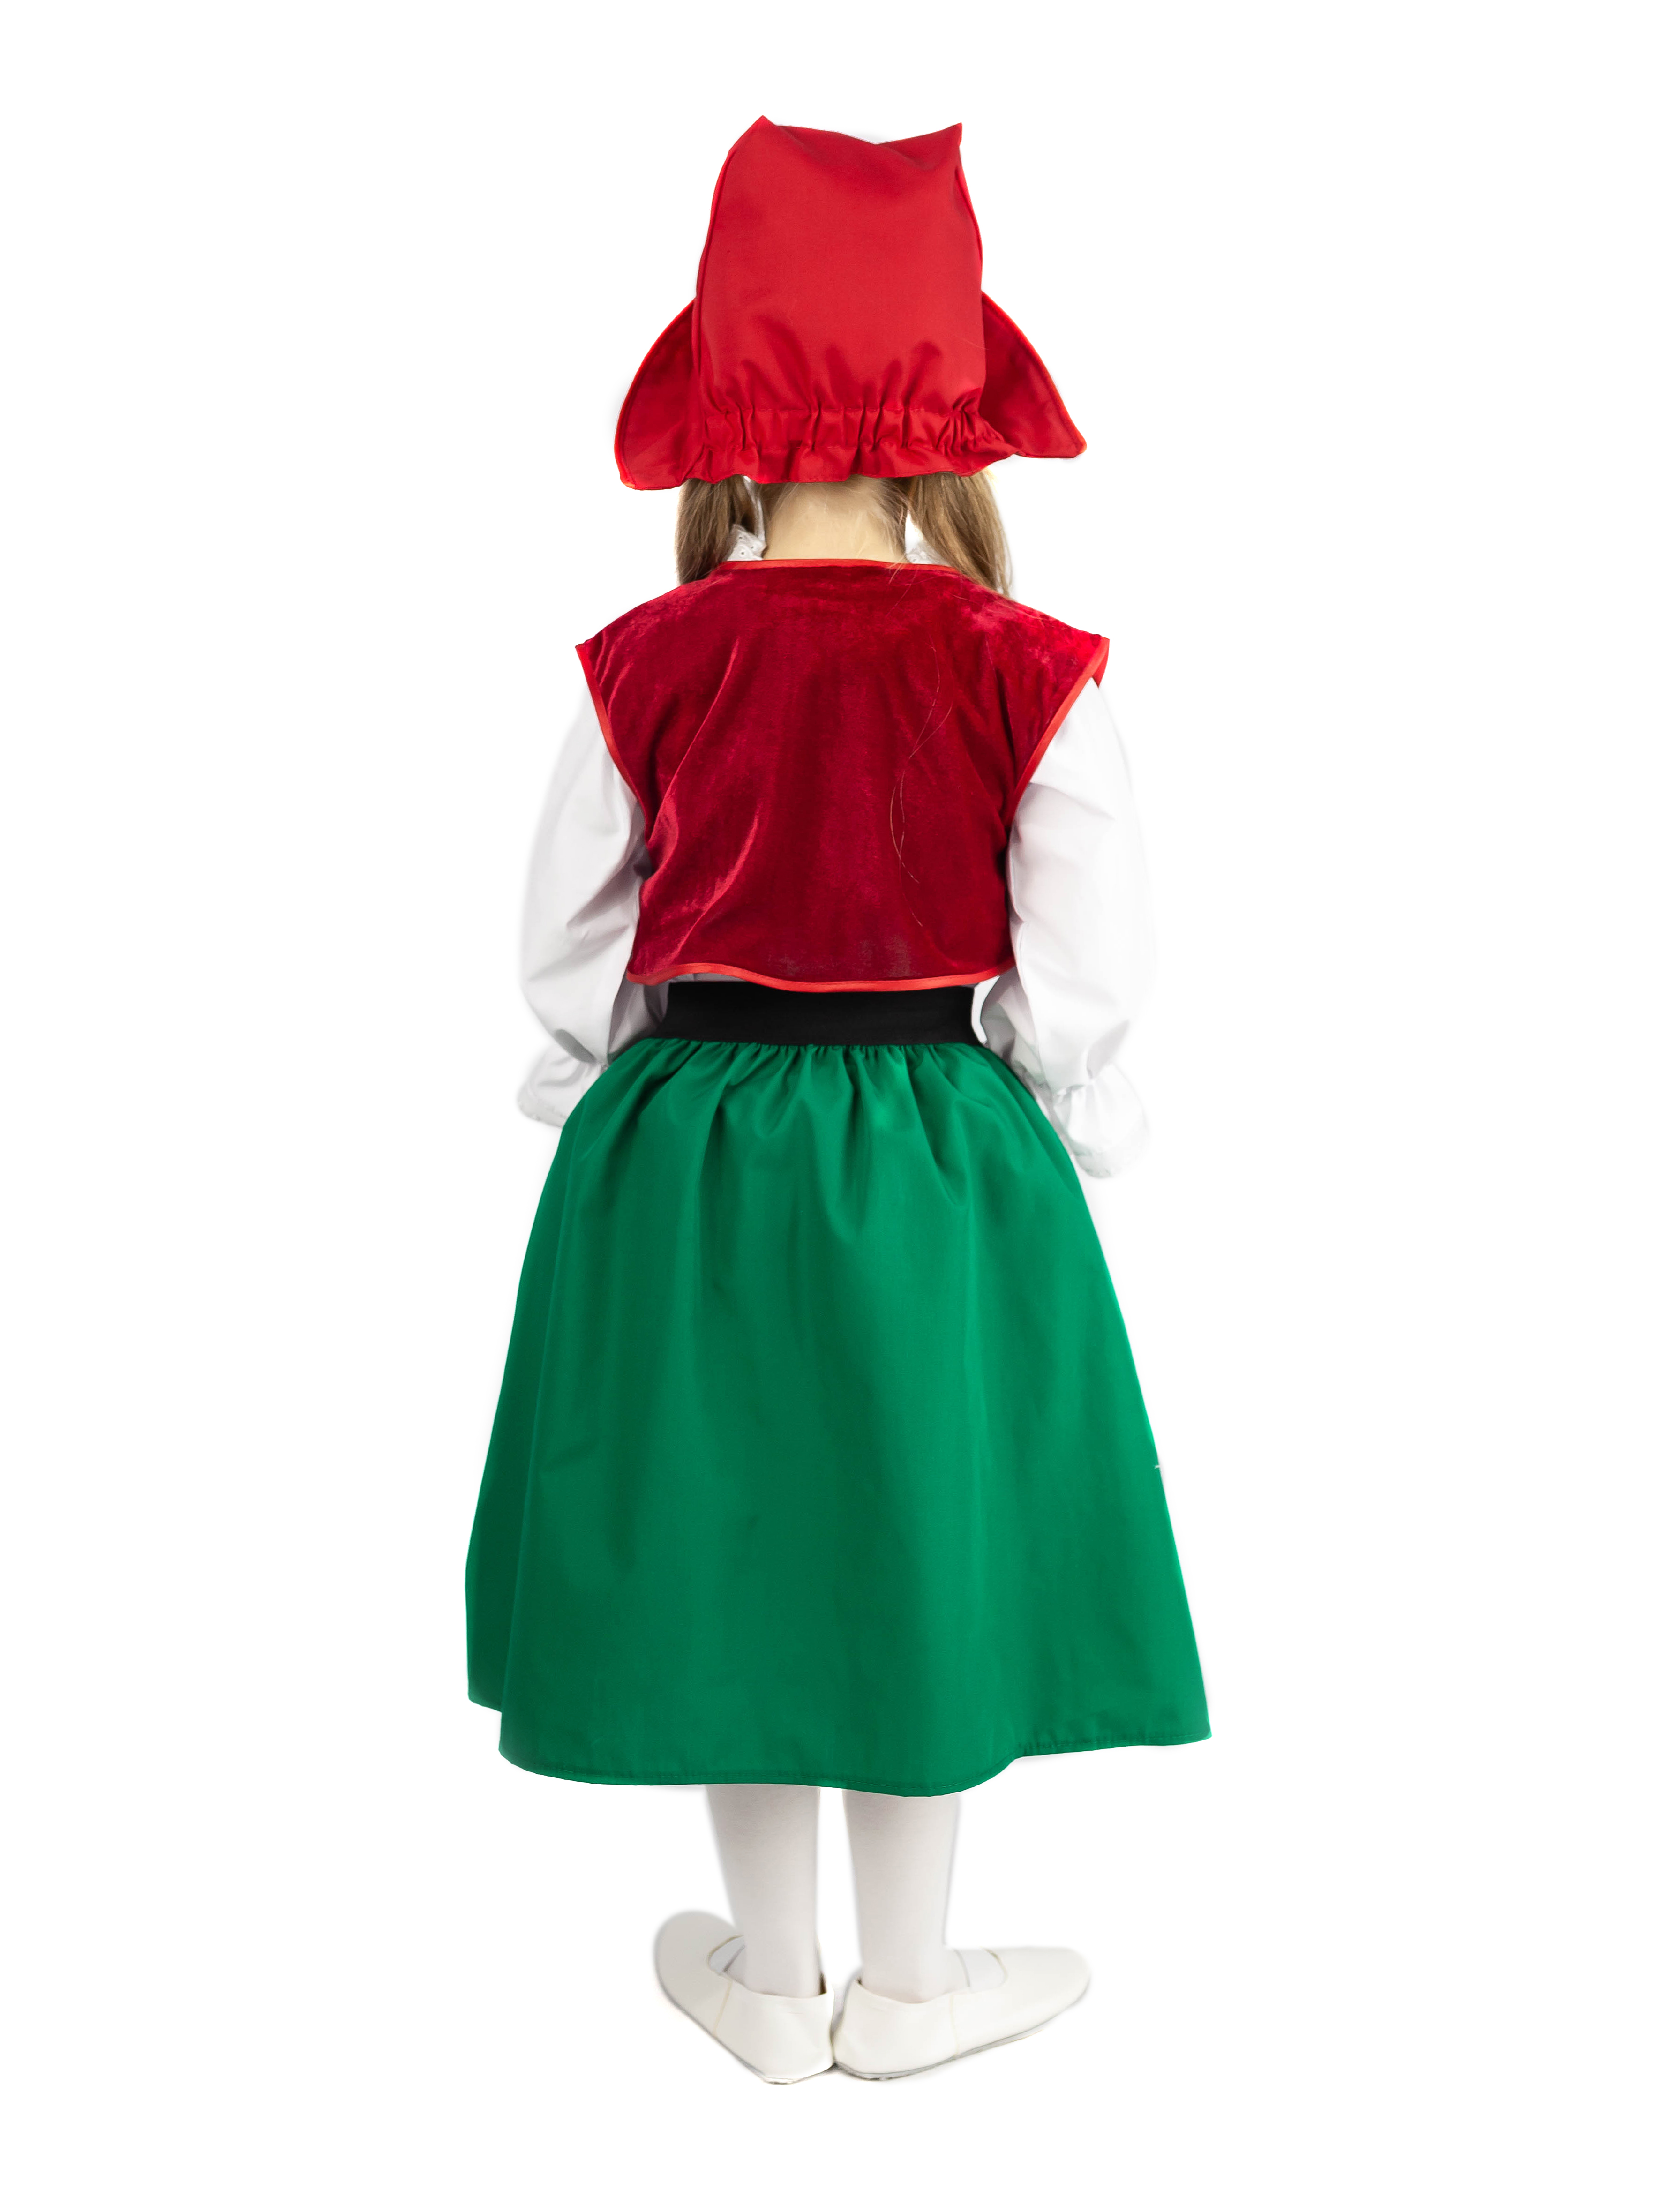 Красная шапочка (юбка с передником на широком поясе с имитацией корсета